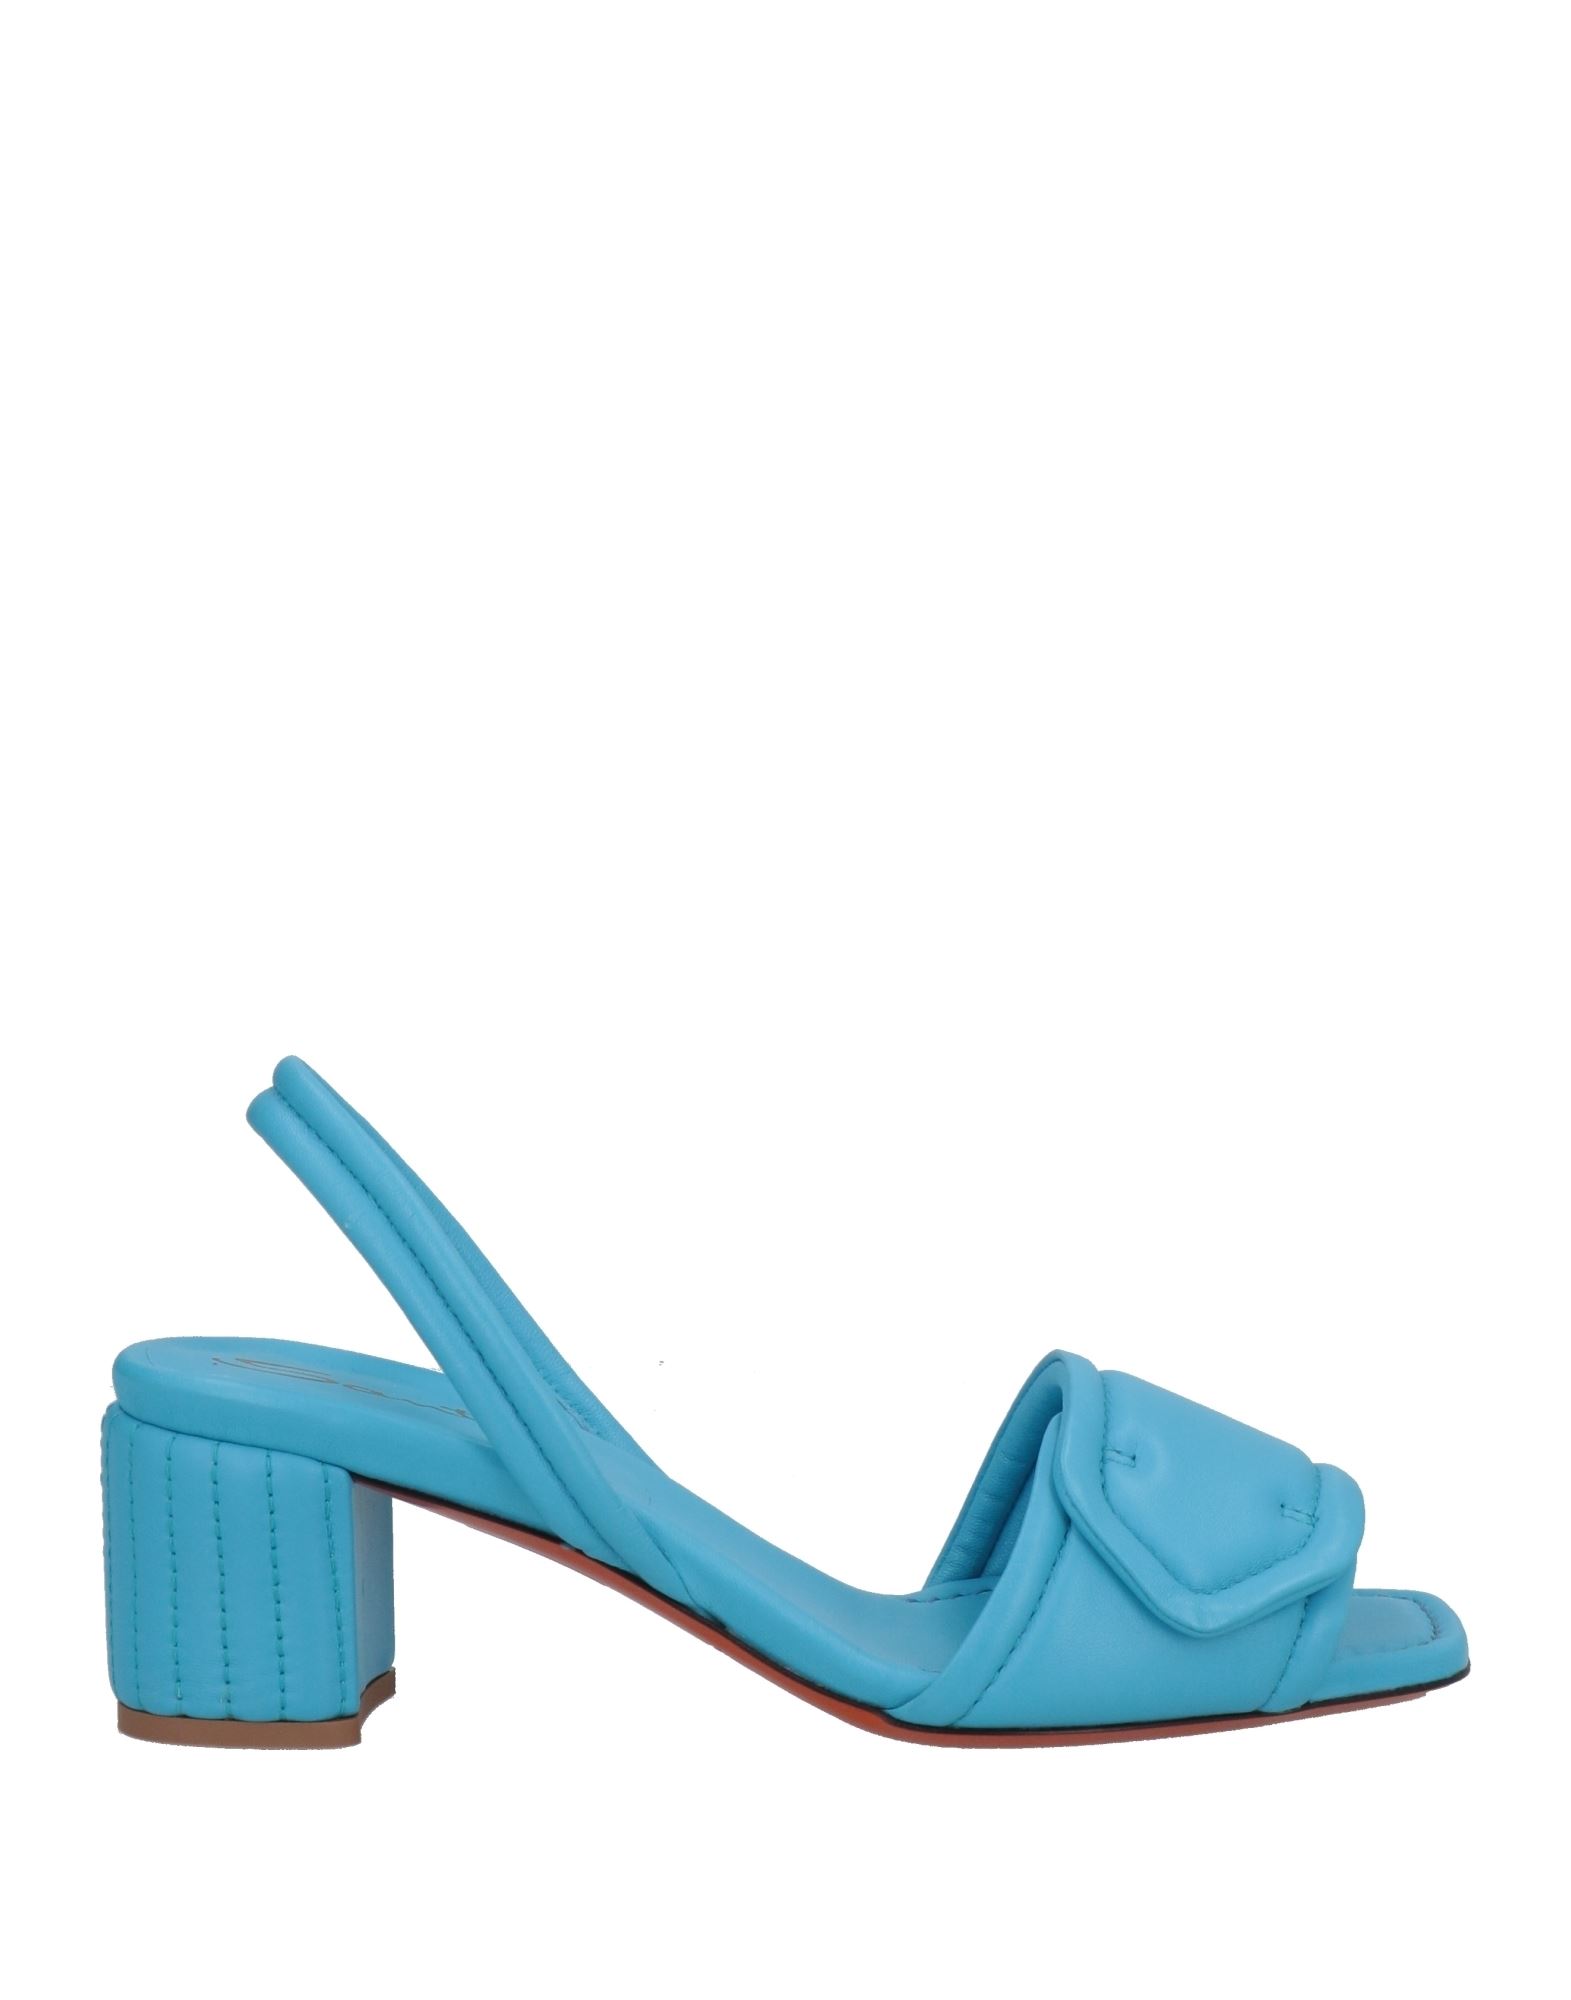 Santoni Sandals In Blue